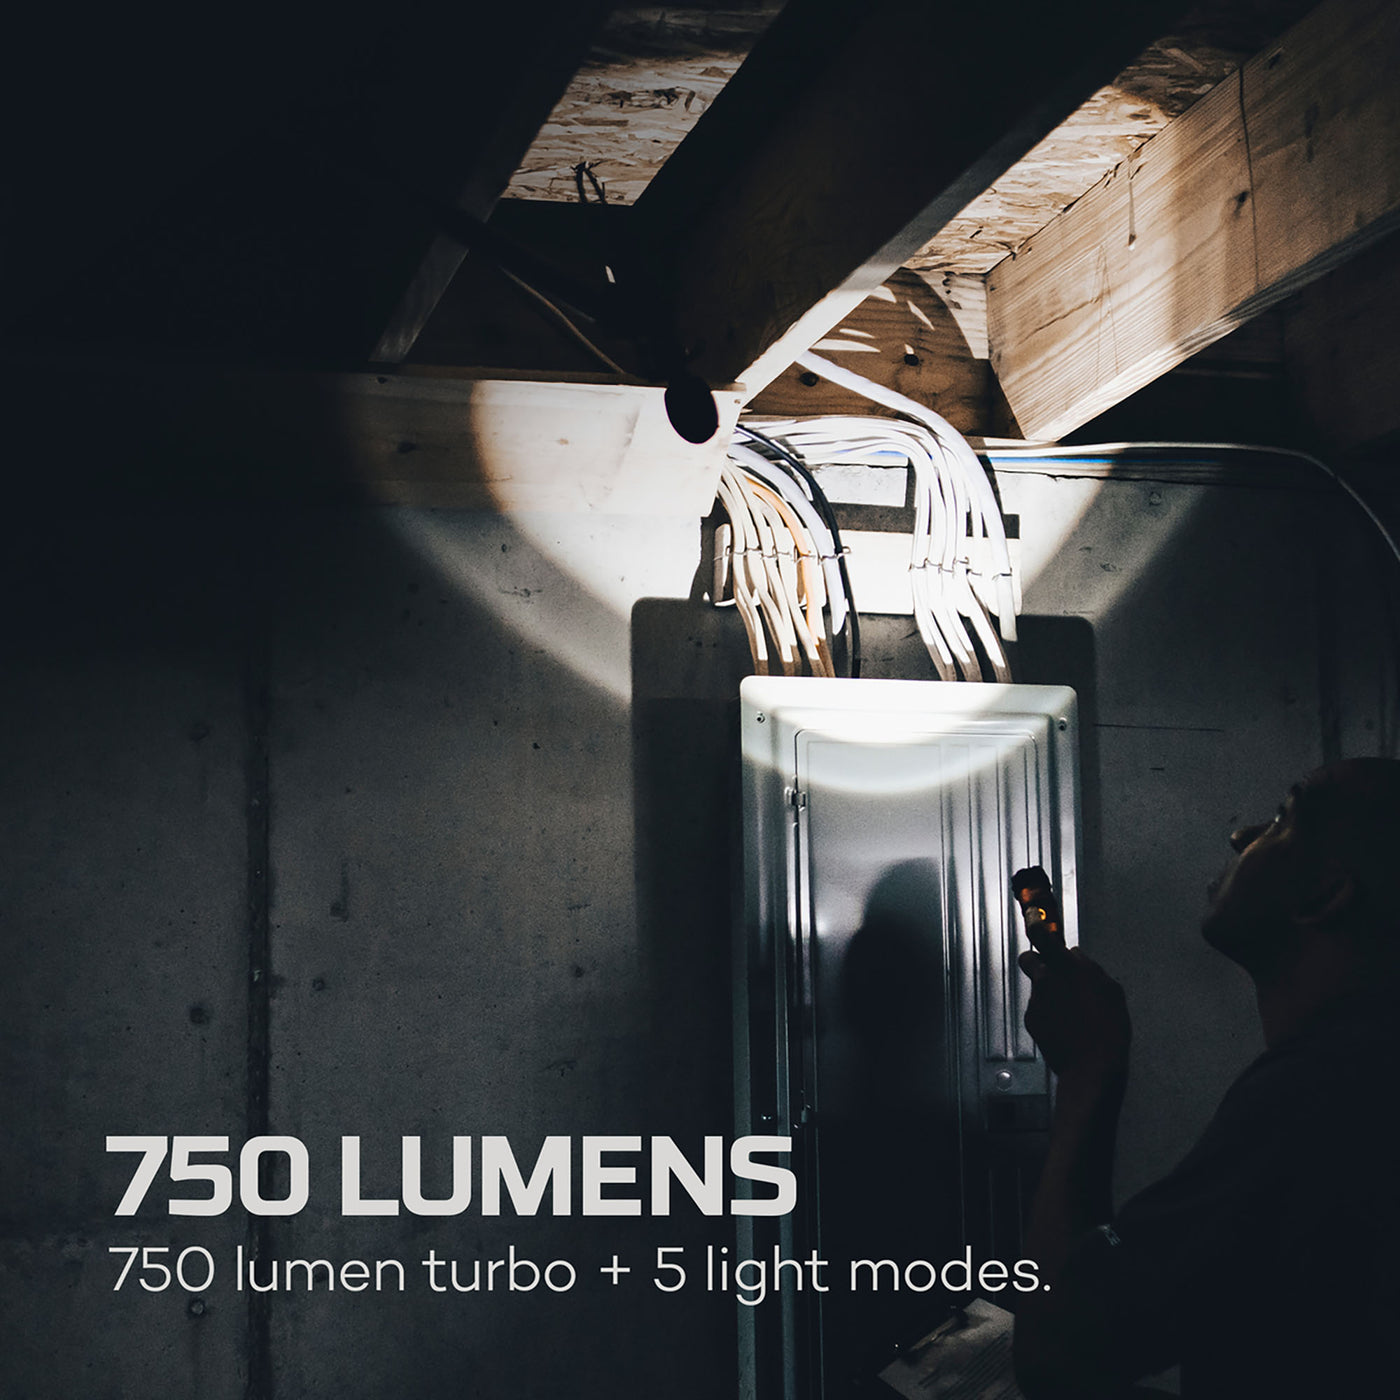 750 lumen torch